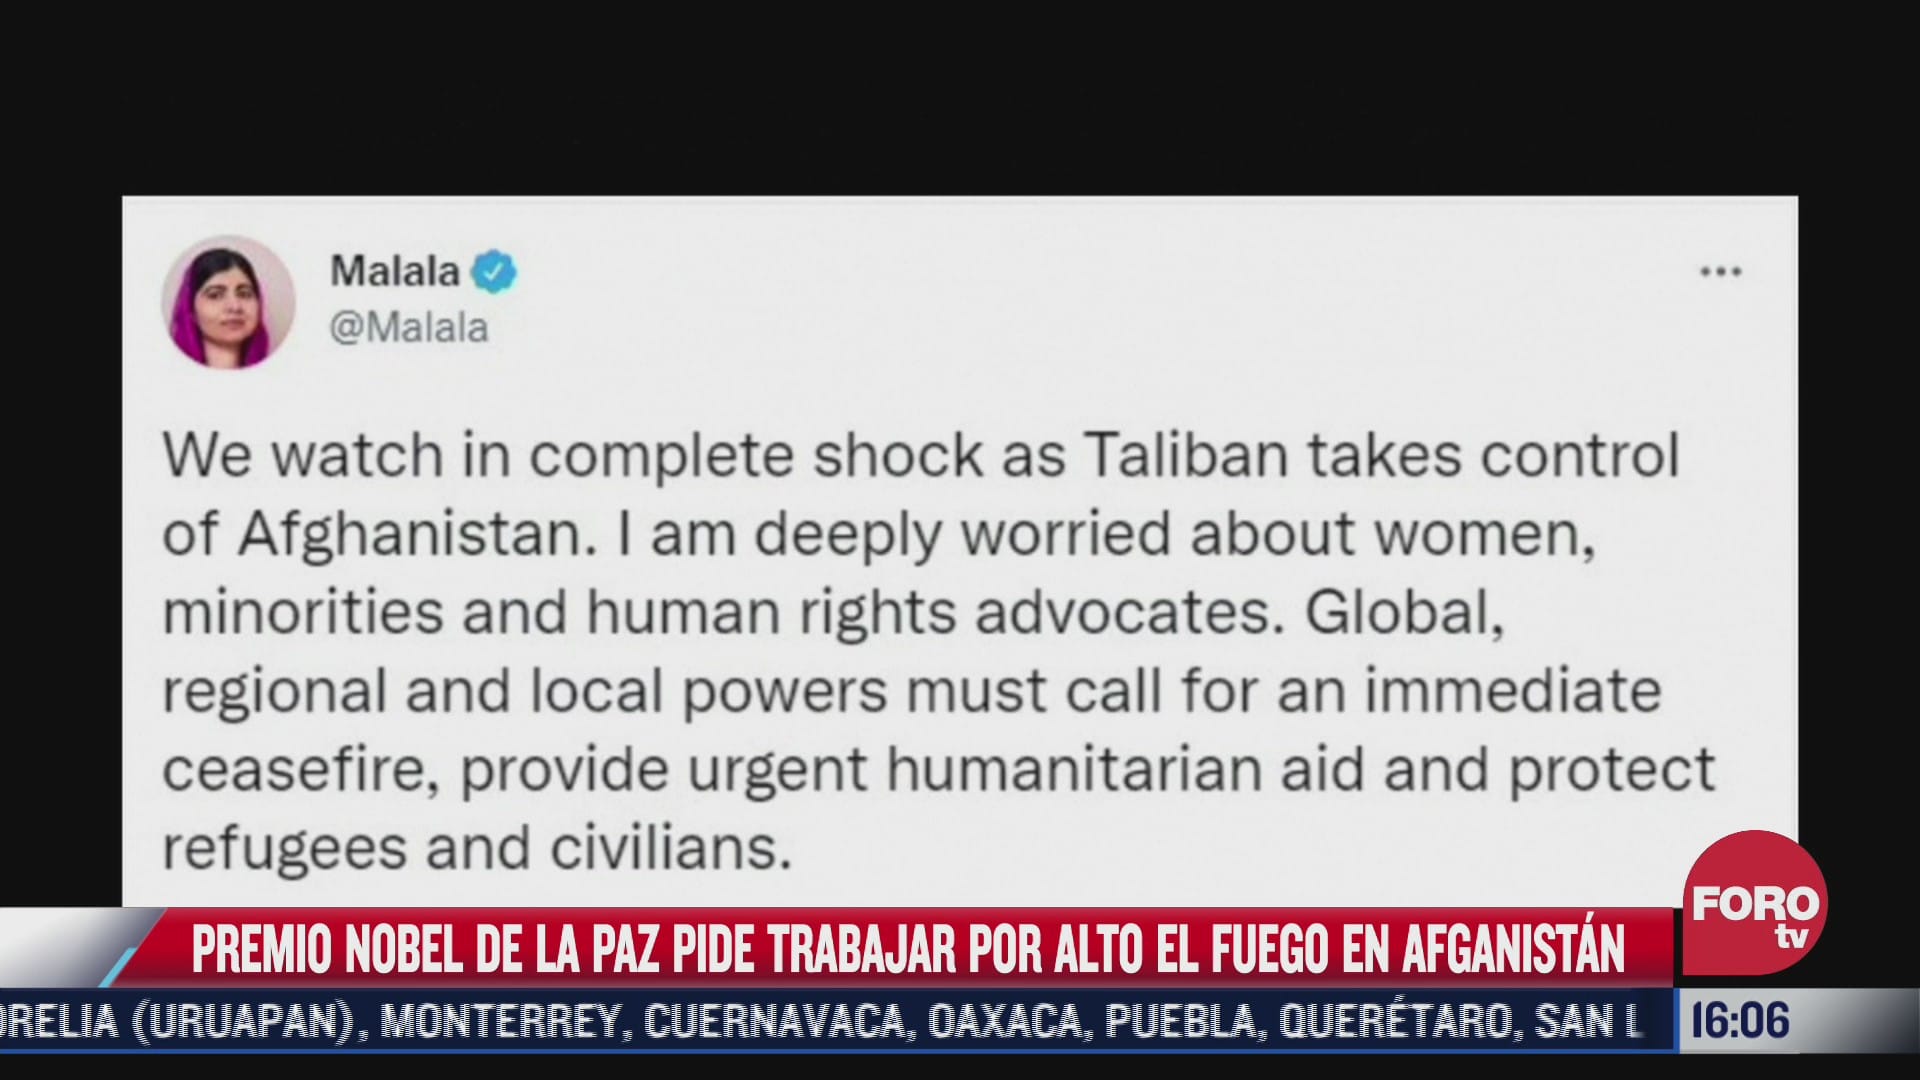 malala se pronuncia sobre crisis en afganistan